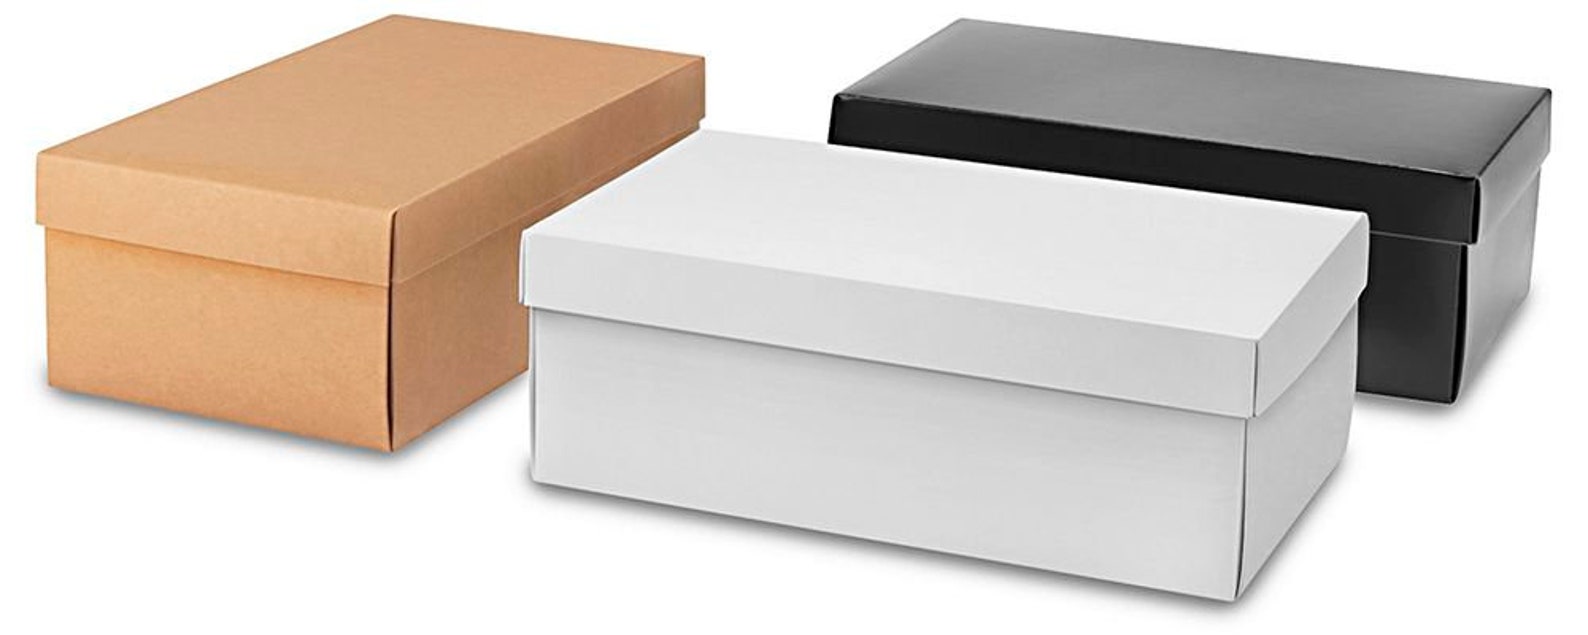 Где можно найти коробку. Обувные коробки. Картонные коробки для обуви. Коробки под обувь картонные. Картонные тарные коробки.